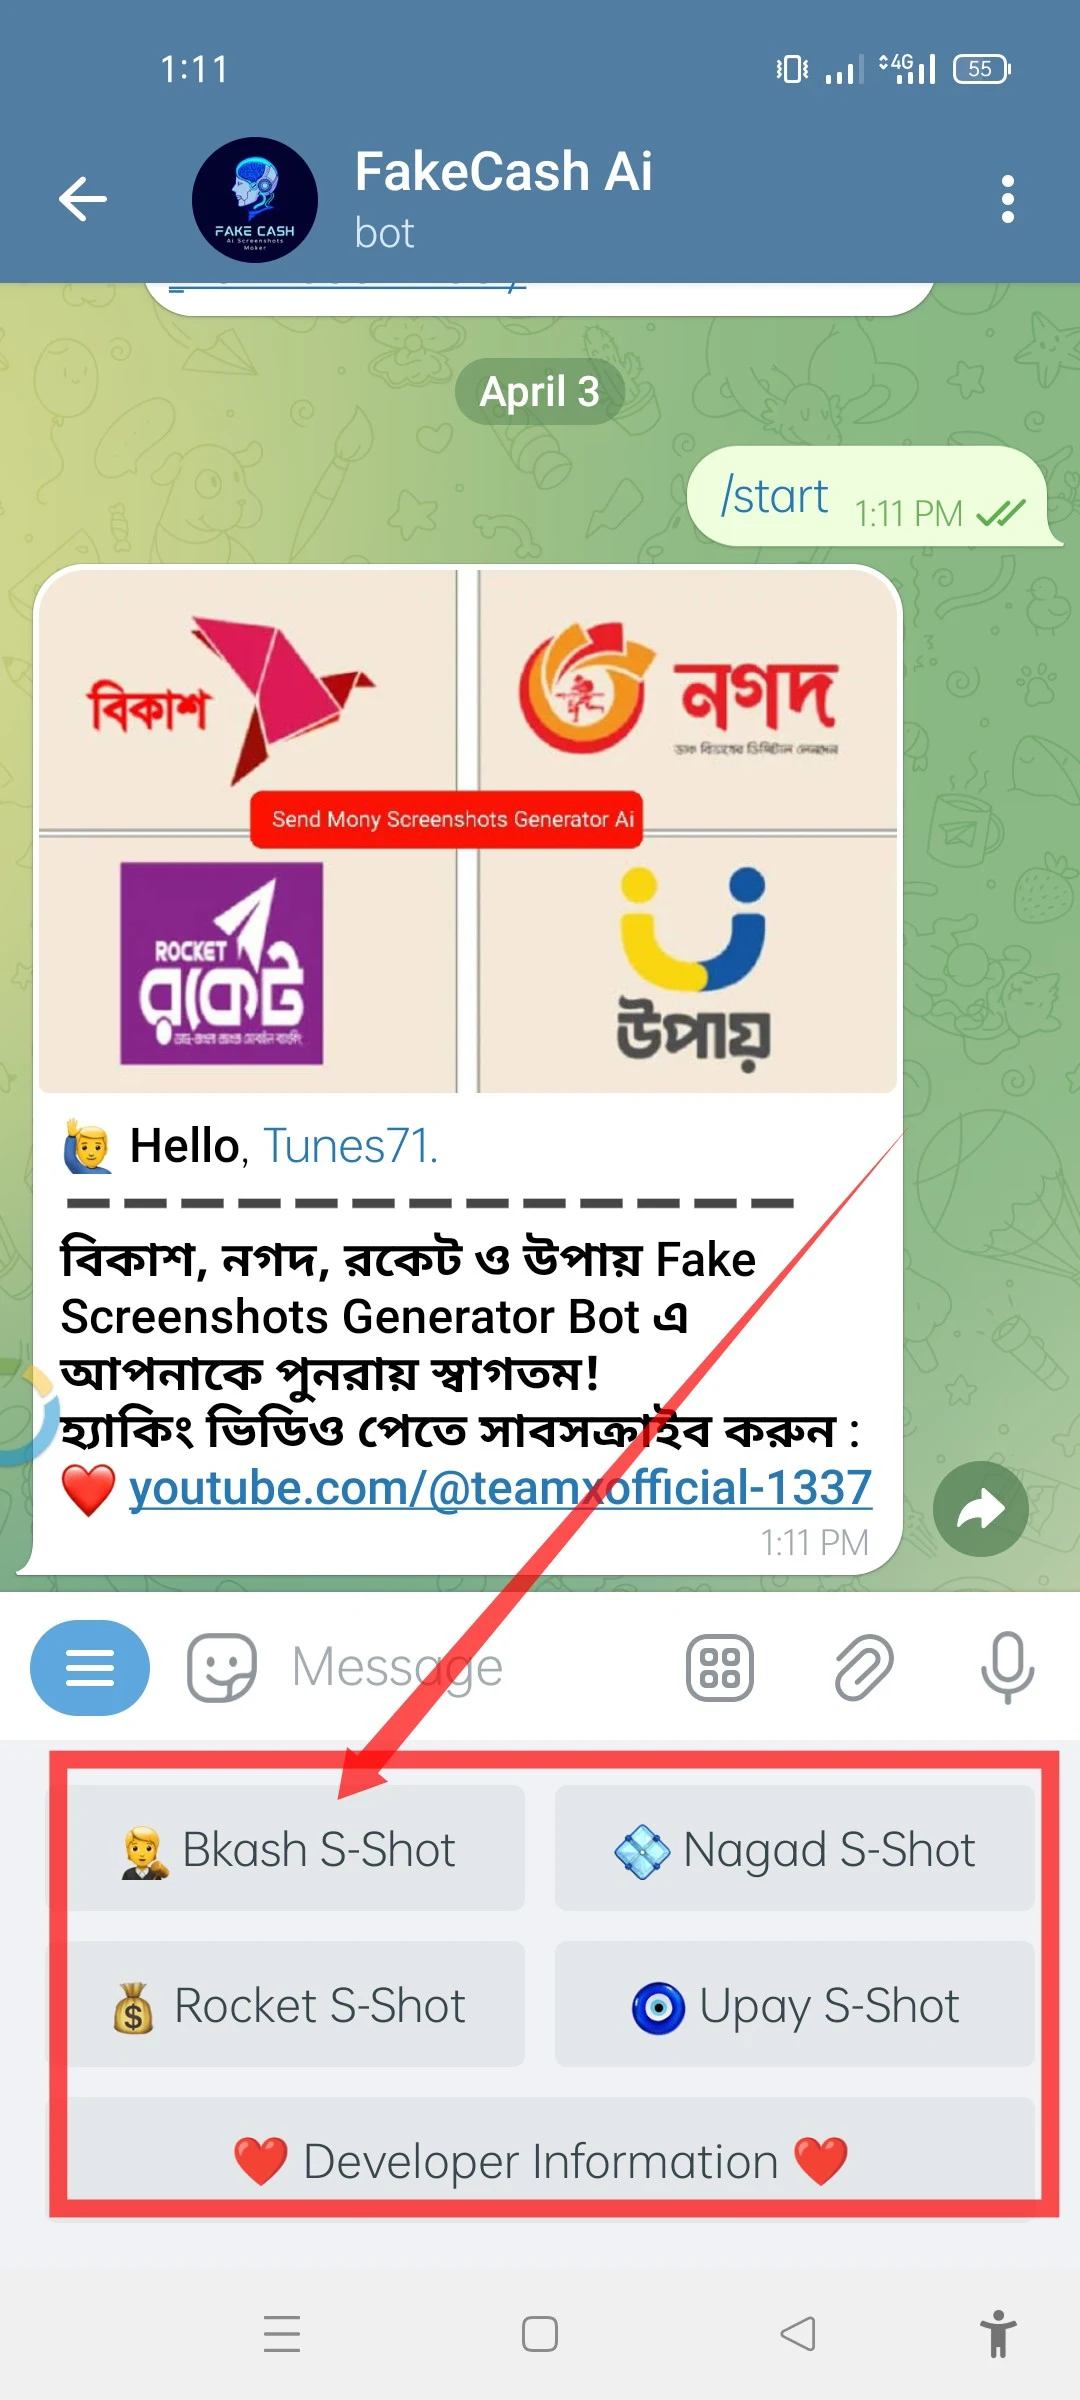 বিকাশ, নগদ, রকেট ও উপায় Fake Screenshots Generator Bot